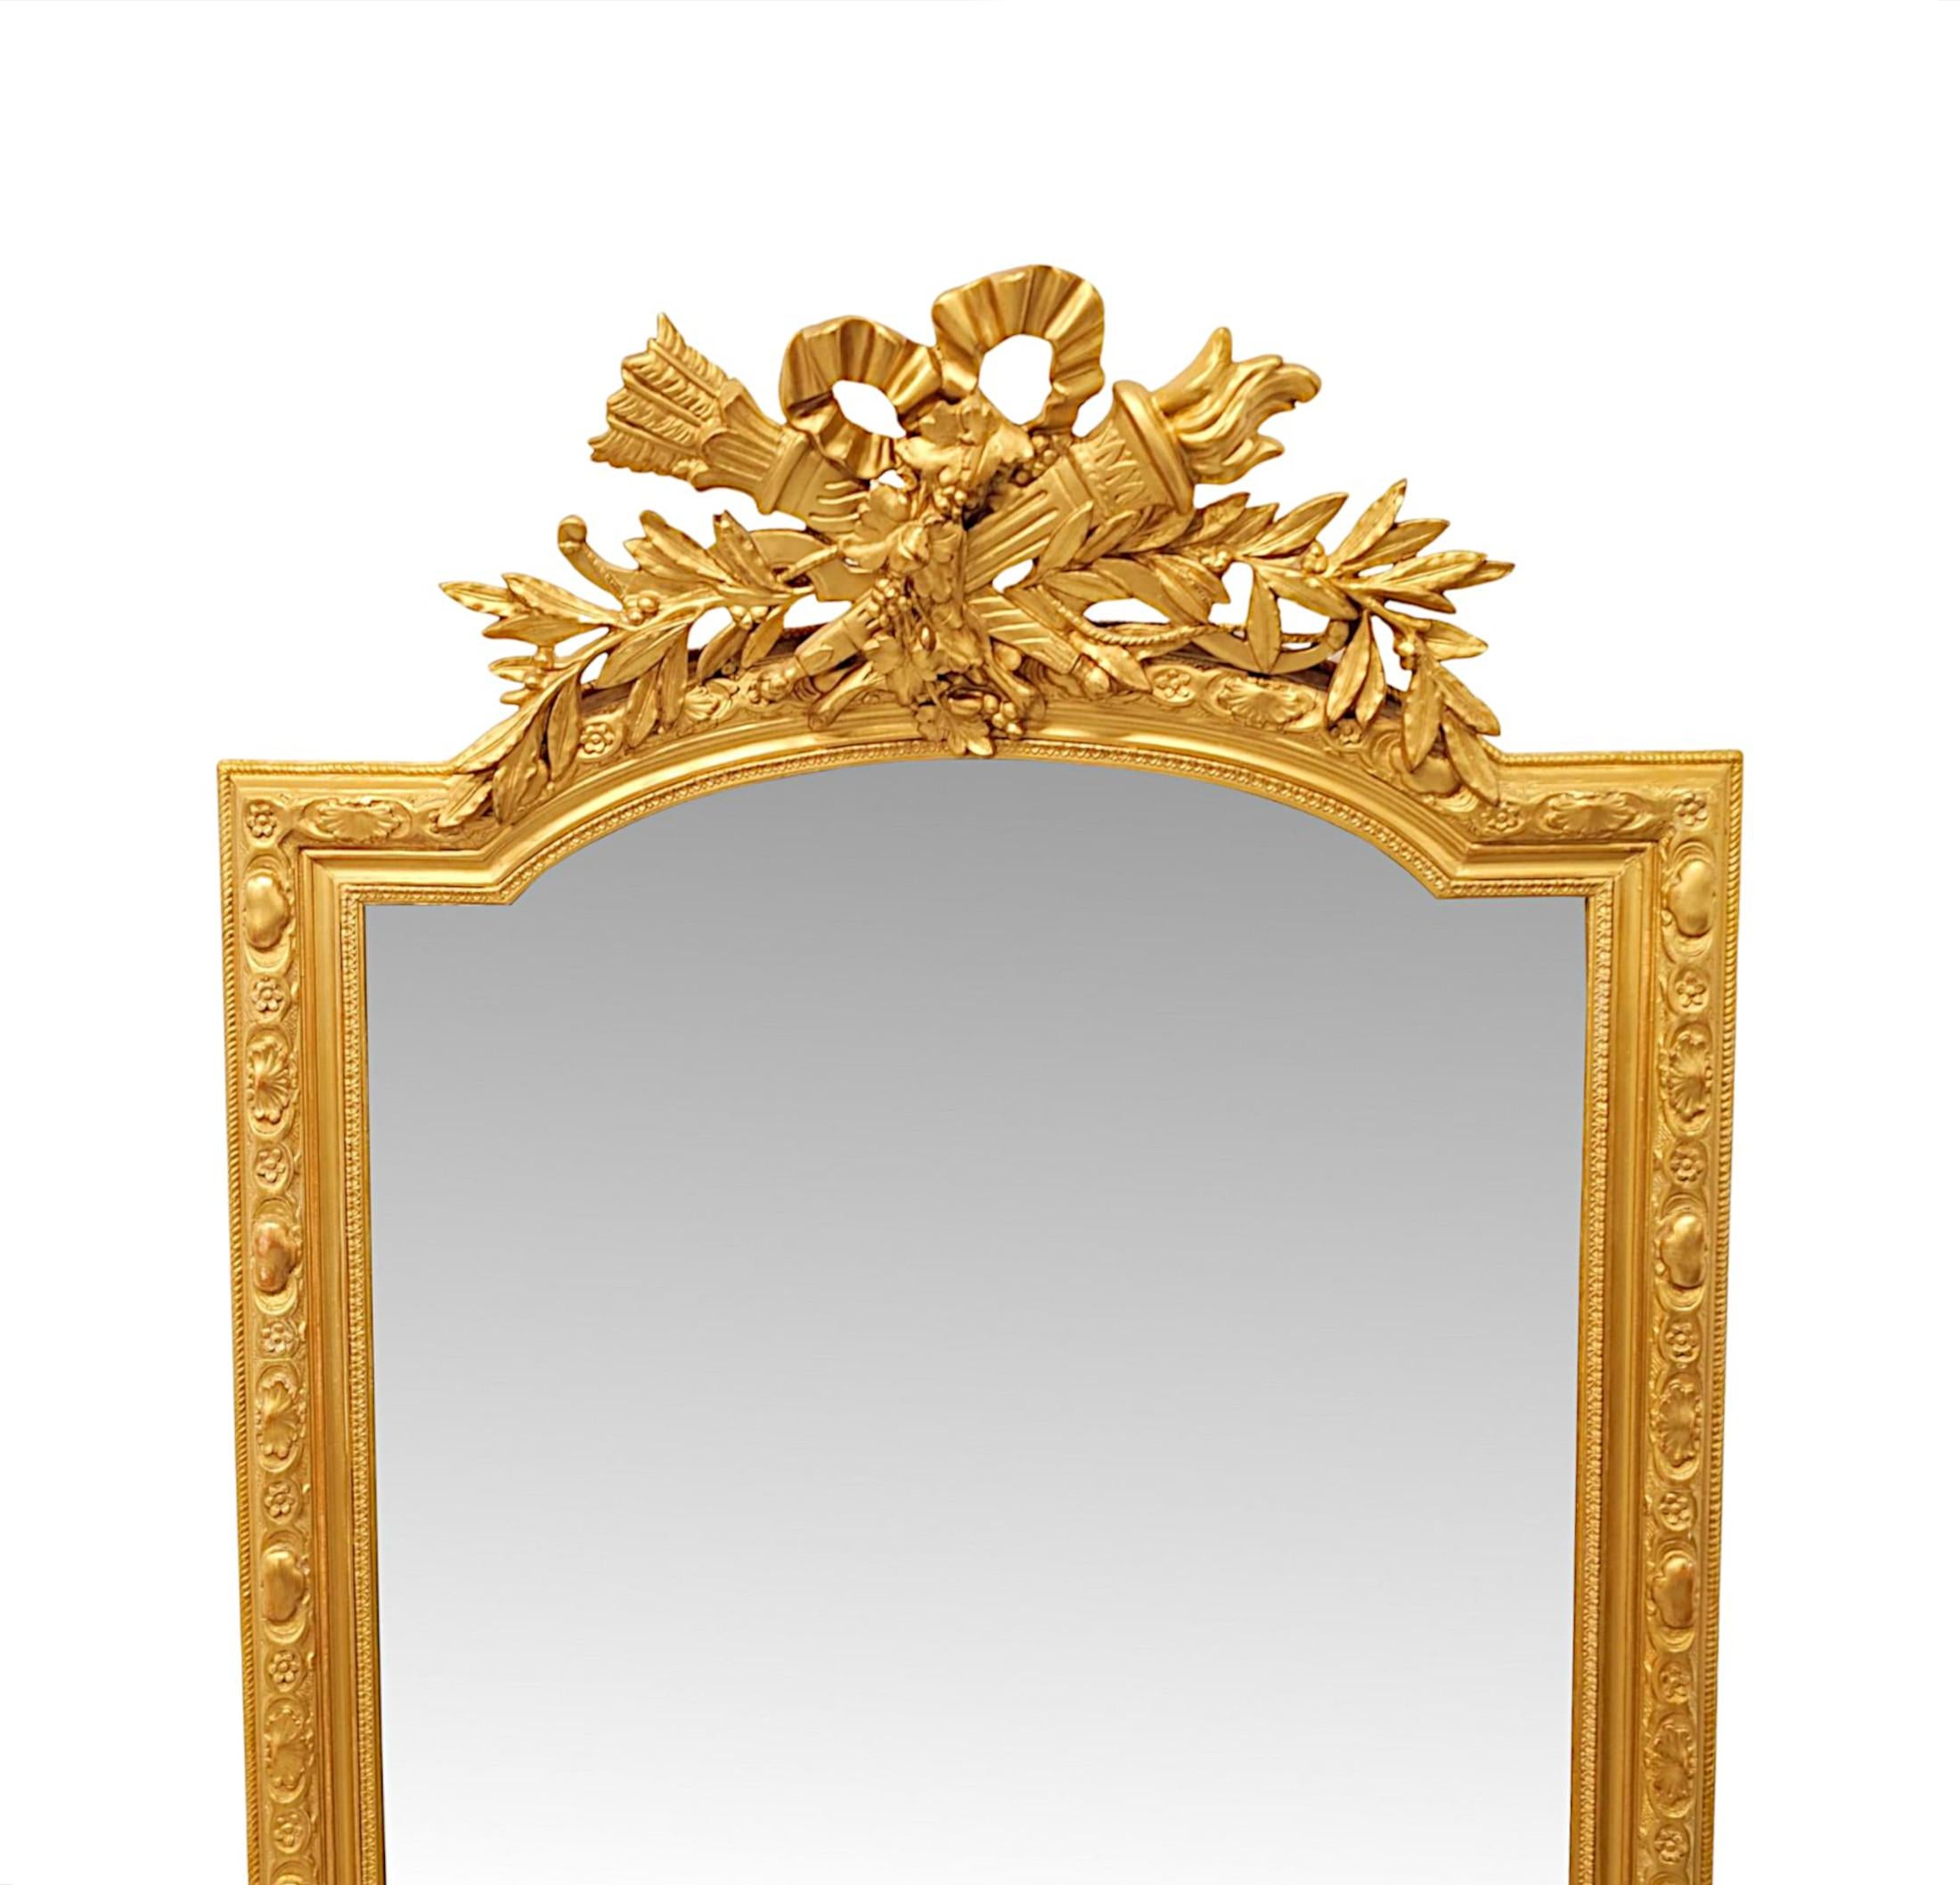 Ein sehr 19. Jahrhundert vergoldet Pier oder Dressing Spiegel von großen Proportionen und außergewöhnliche Qualität.  Die geformte, abgeschrägte Spiegelglasplatte befindet sich in einem atemberaubenden, handgeschnitzten, geformten und geriffelten